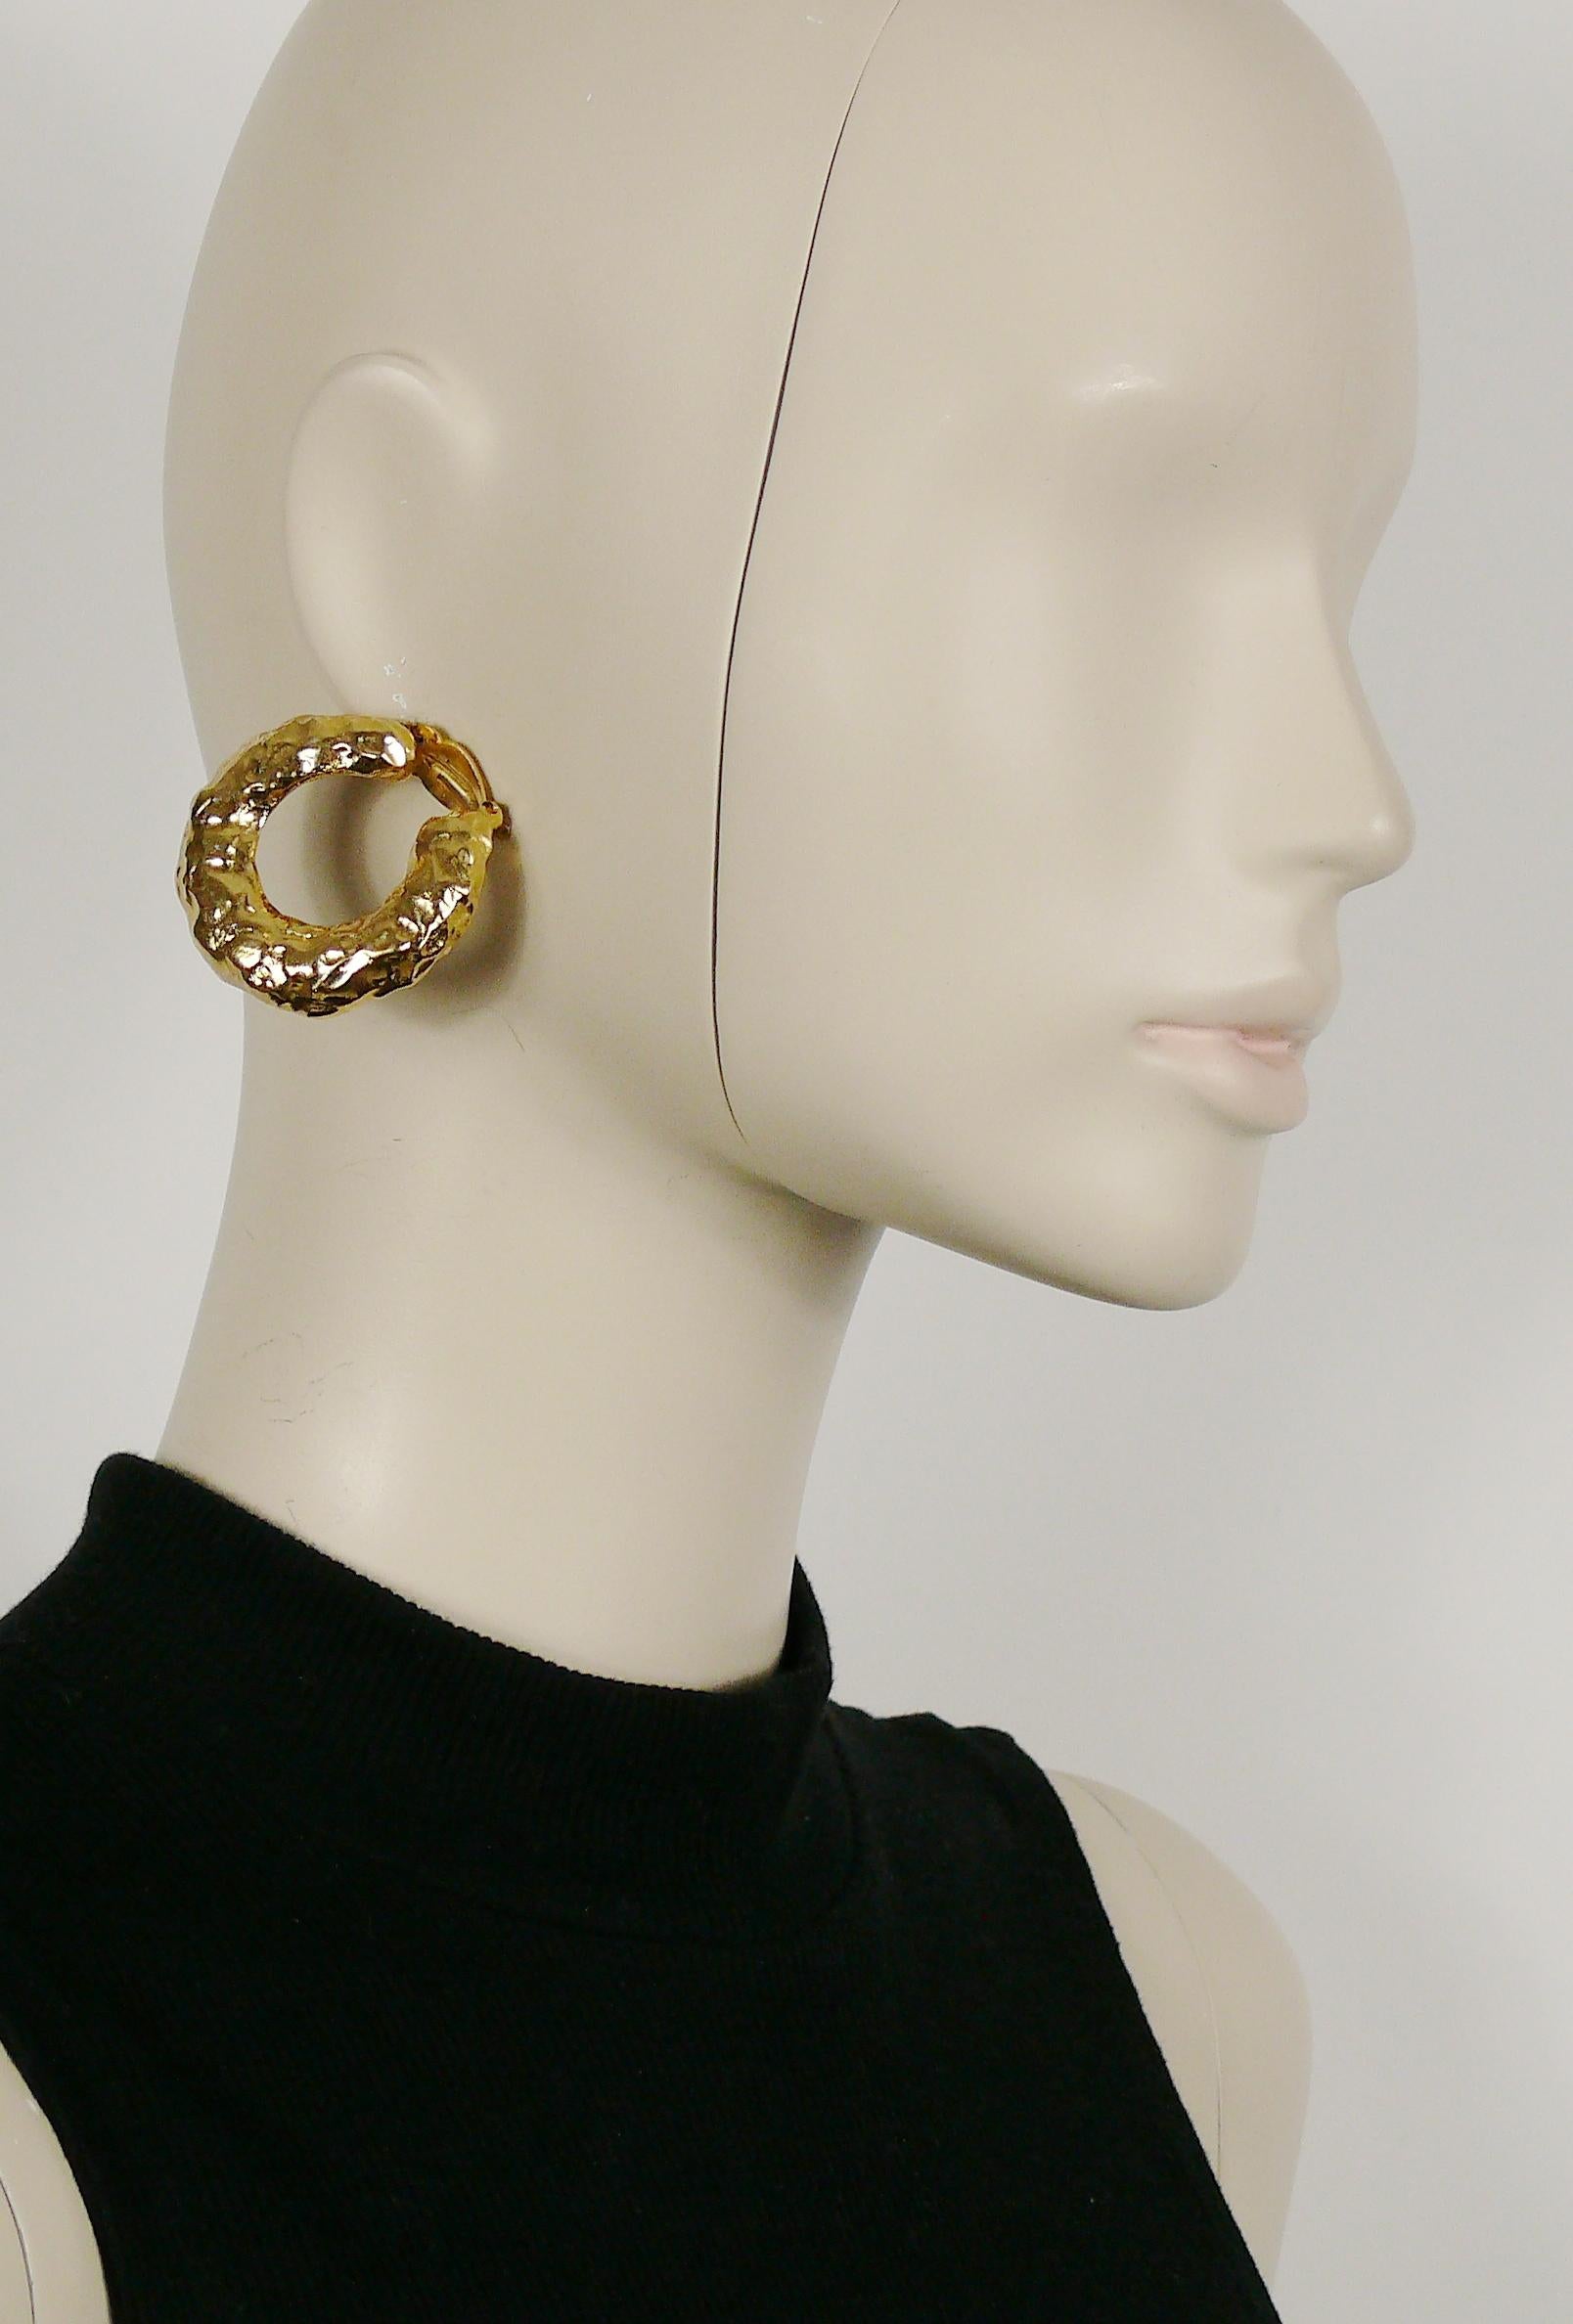 YVES SAINT LAURENT Vintage-Ohrringe aus massivem, goldfarbenem, strukturiertem Ring (Clip-on).

Geprägtes YSL Made in France.

Ungefähre Maße: Durchmesser ca. 4,2 cm (1,65 Zoll).

ANMERKUNGEN
- Es handelt sich um einen gebrauchten Artikel, der daher